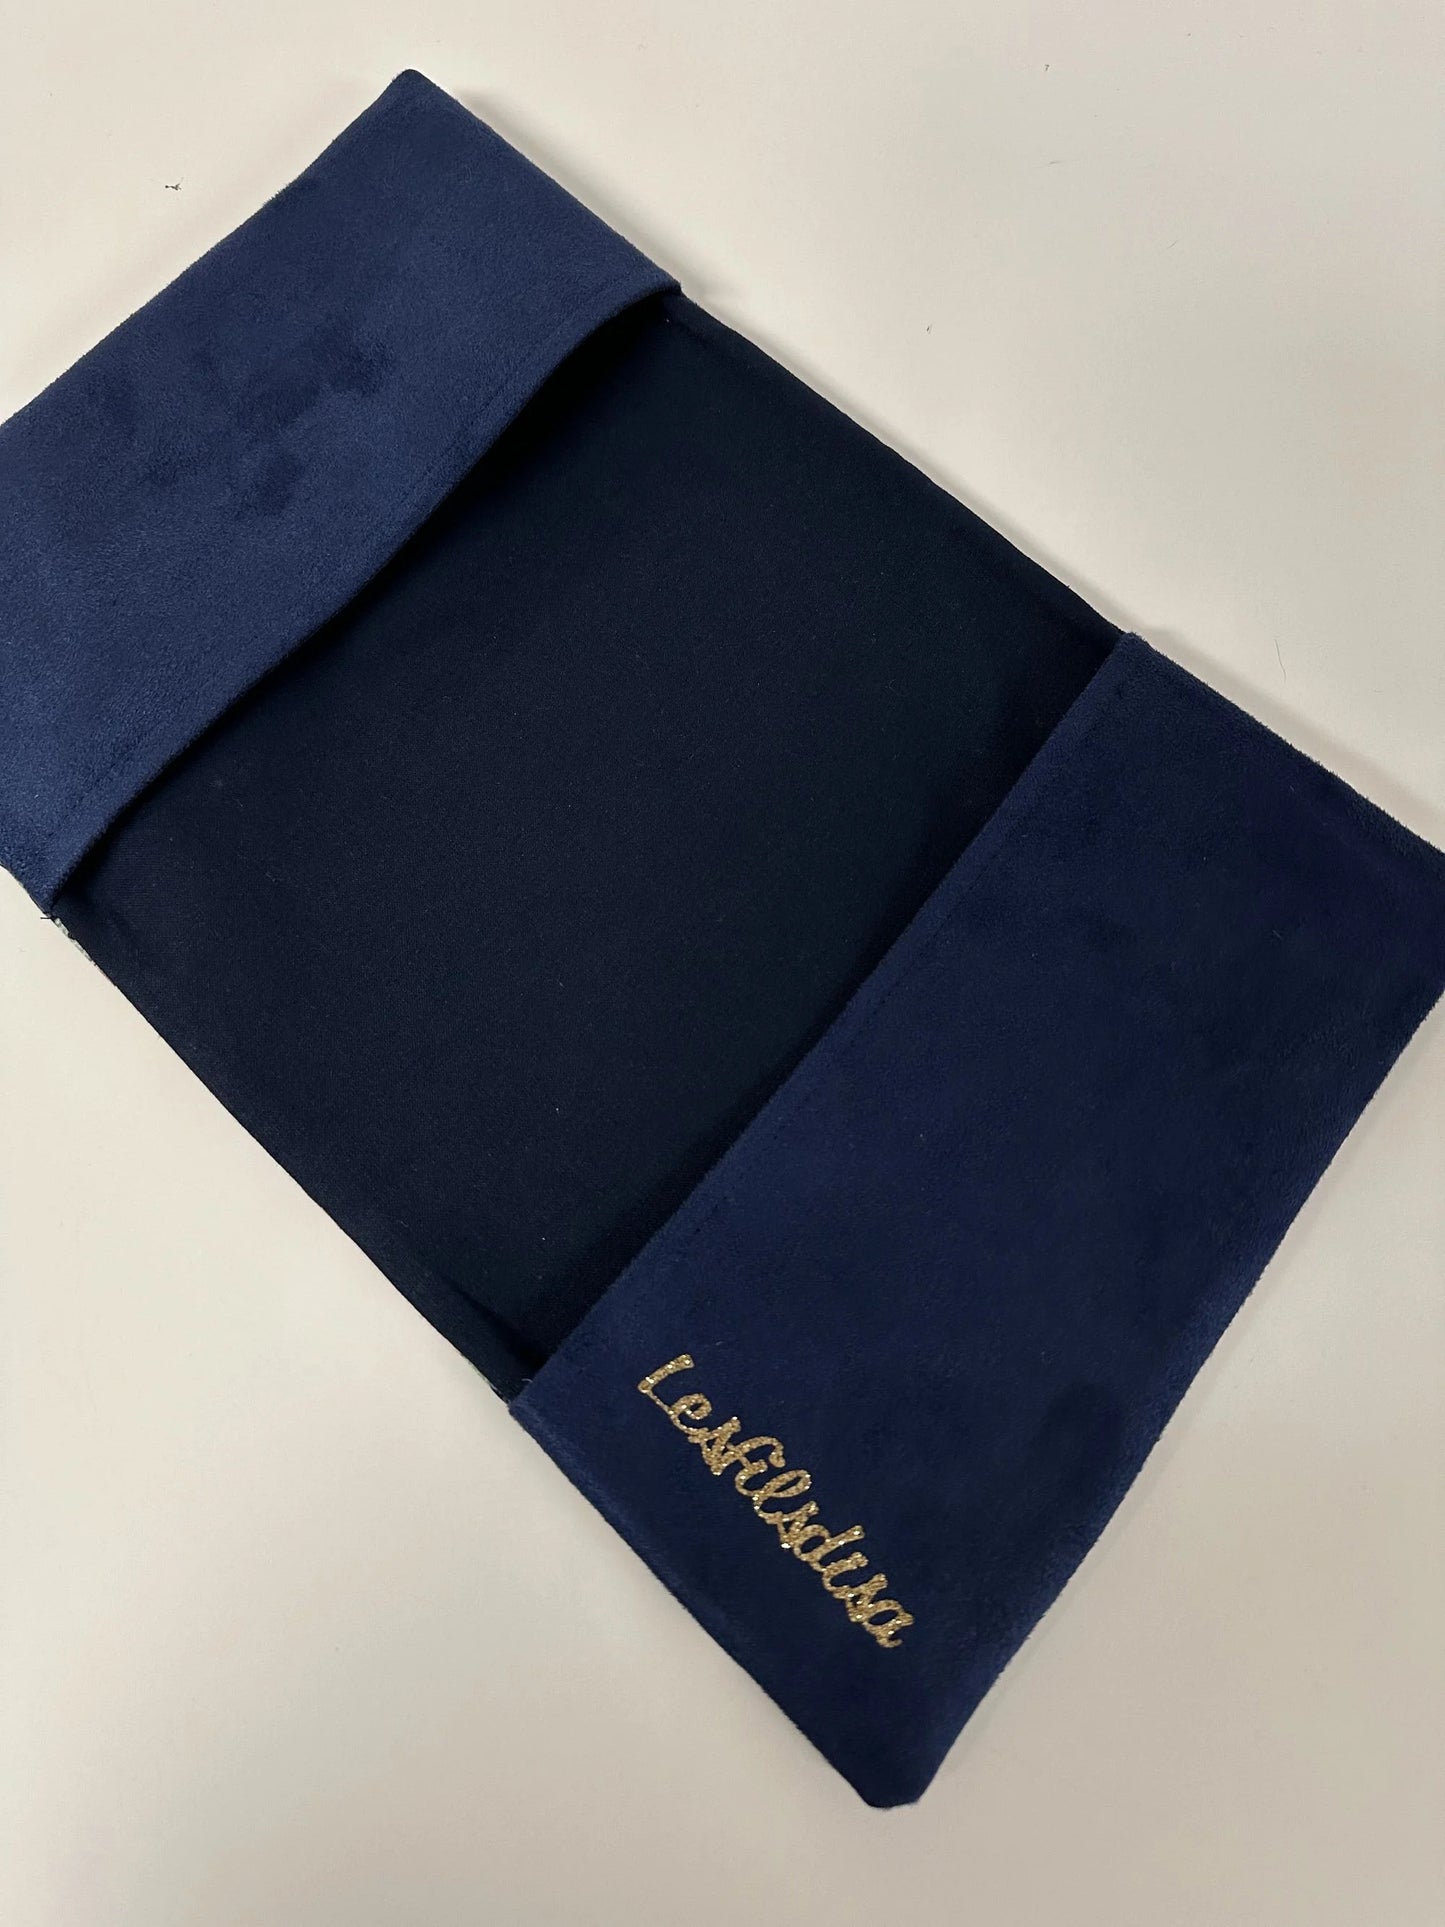 Vue intérieure du protège-agenda bleu marine en tissu japonais à fleurs mauves.